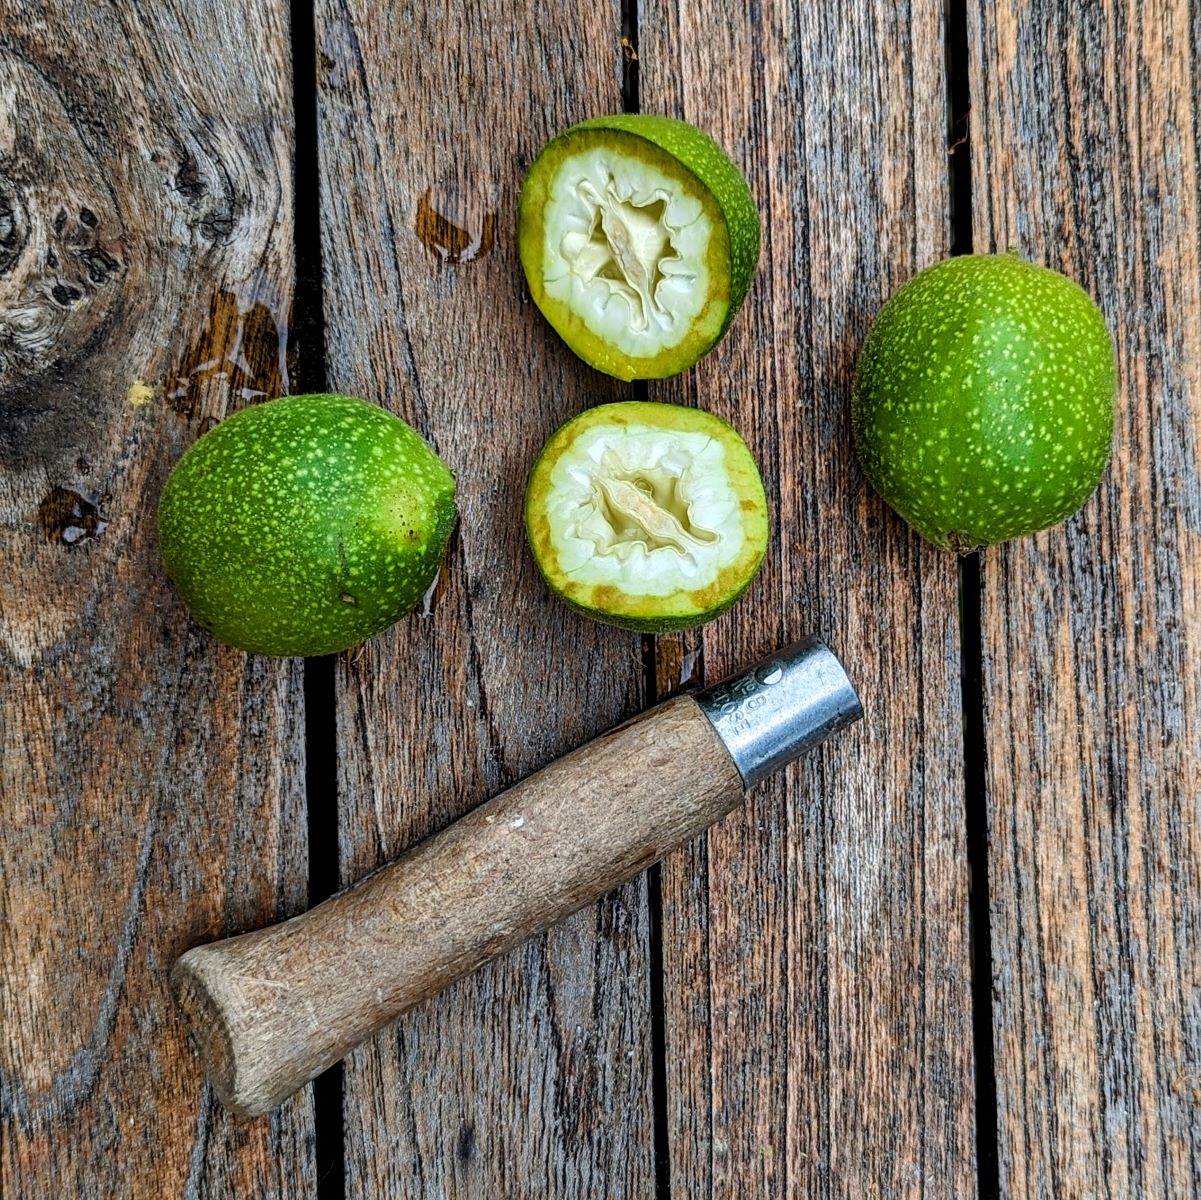 Noix vertes posées sur une table en bois, dont une est coupée en deux laissant apparaitre l'intérieur de la noix à peine formé.